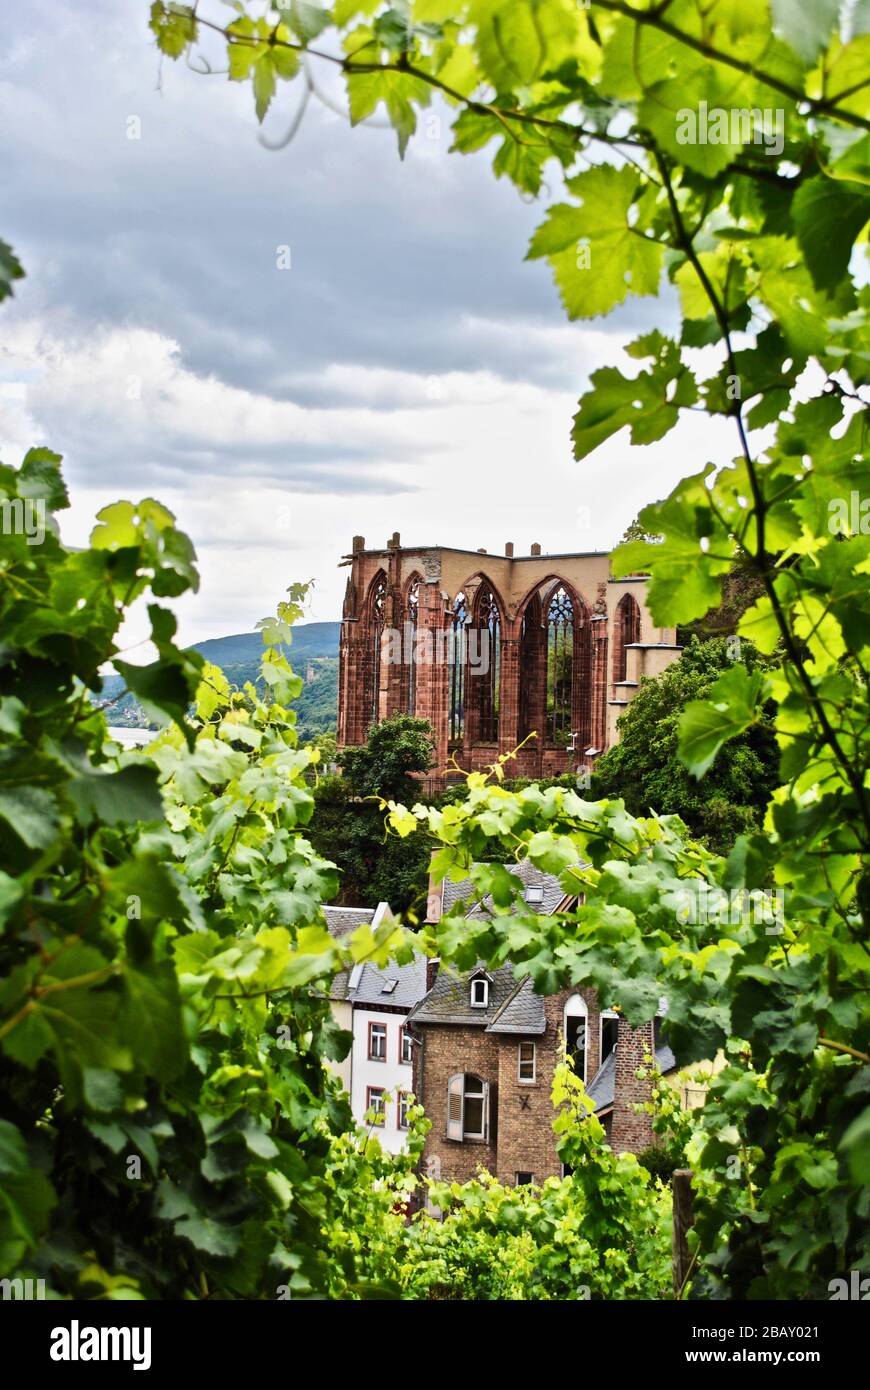 La chapelle de Wernerkapelle est en ruines visibles à travers un vignoble vert à Bacharach en Rhénanie-Palatinat, en Allemagne. Wernerkapelle, un site touristique de Rheinromantik. Banque D'Images